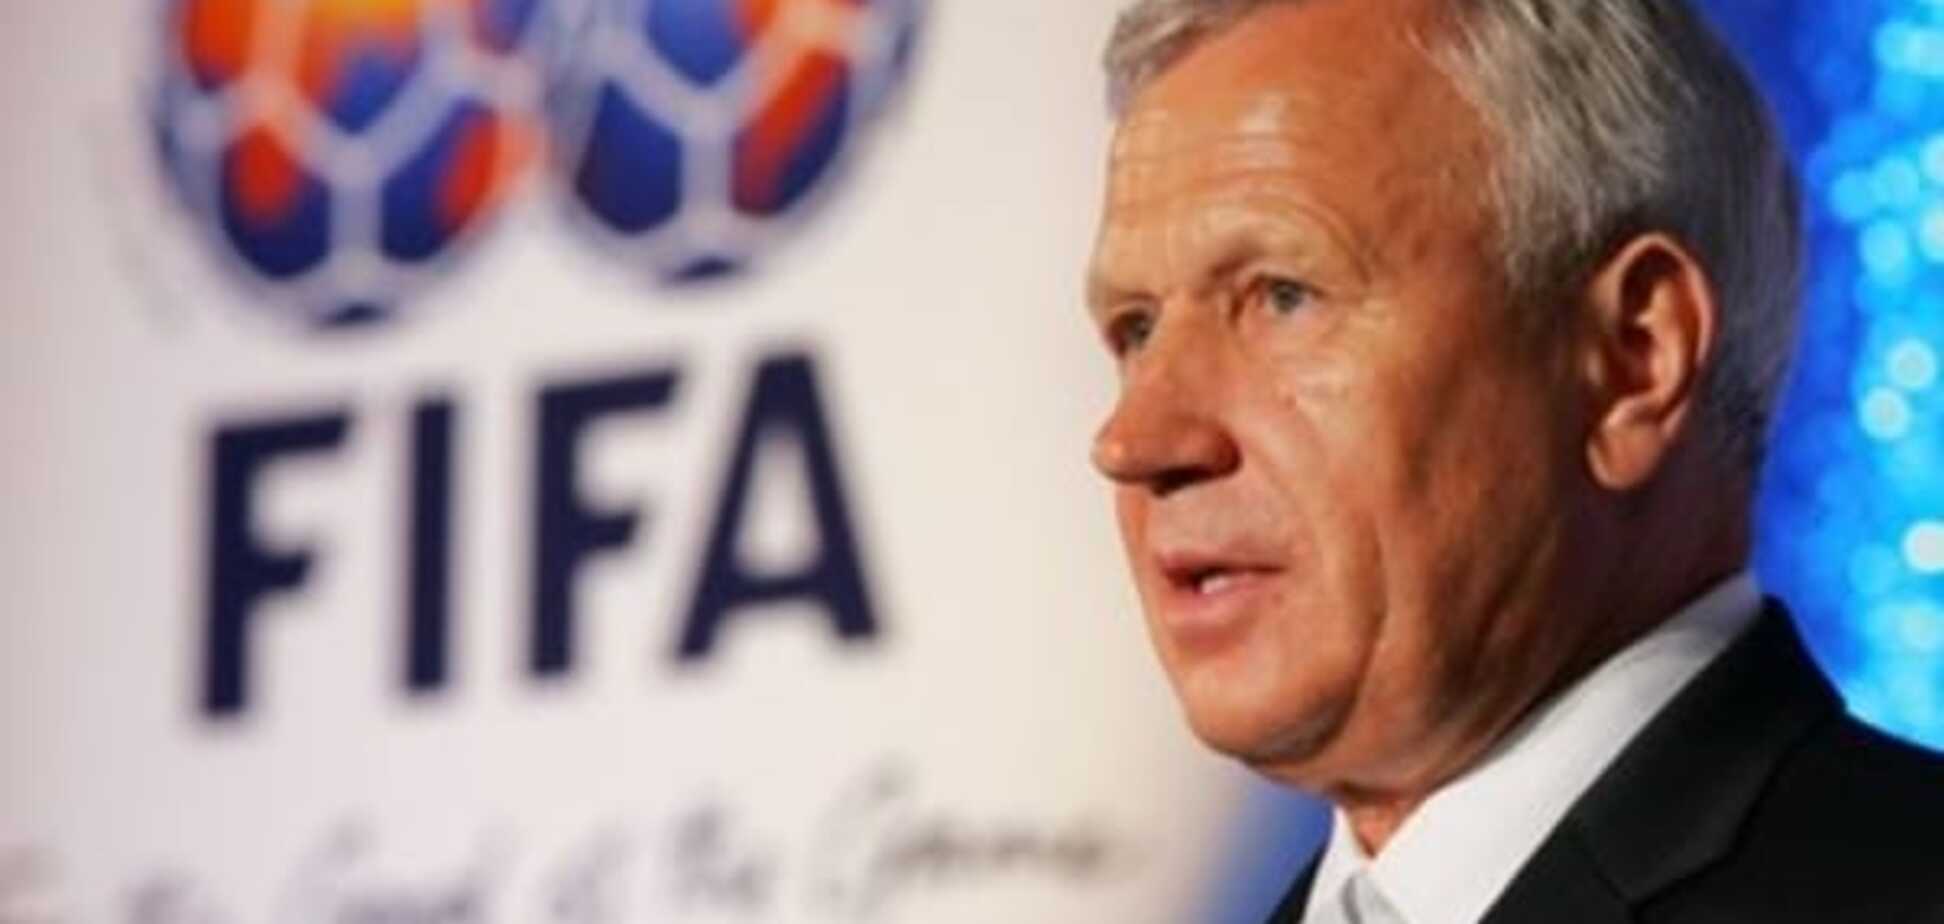 'Будет беда': в России испугались нового президента ФИФА